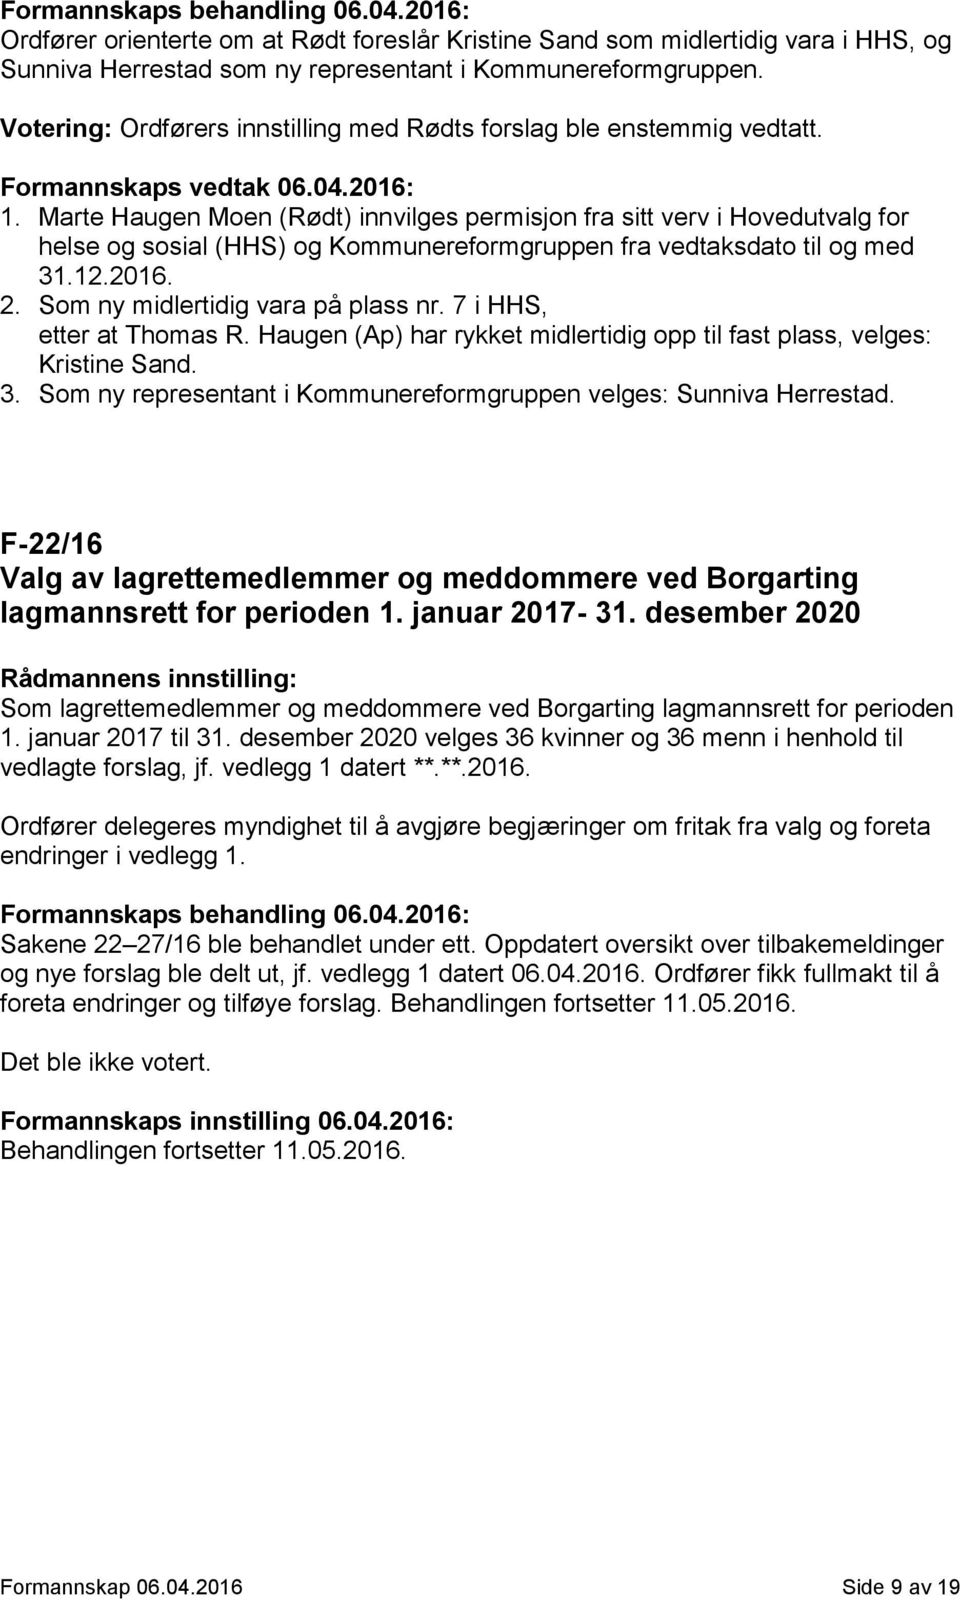 Marte Haugen Moen (Rødt) innvilges permisjon fra sitt verv i Hovedutvalg for helse og sosial (HHS) og Kommunereformgruppen fra vedtaksdato til og med 31.12.2016. 2.